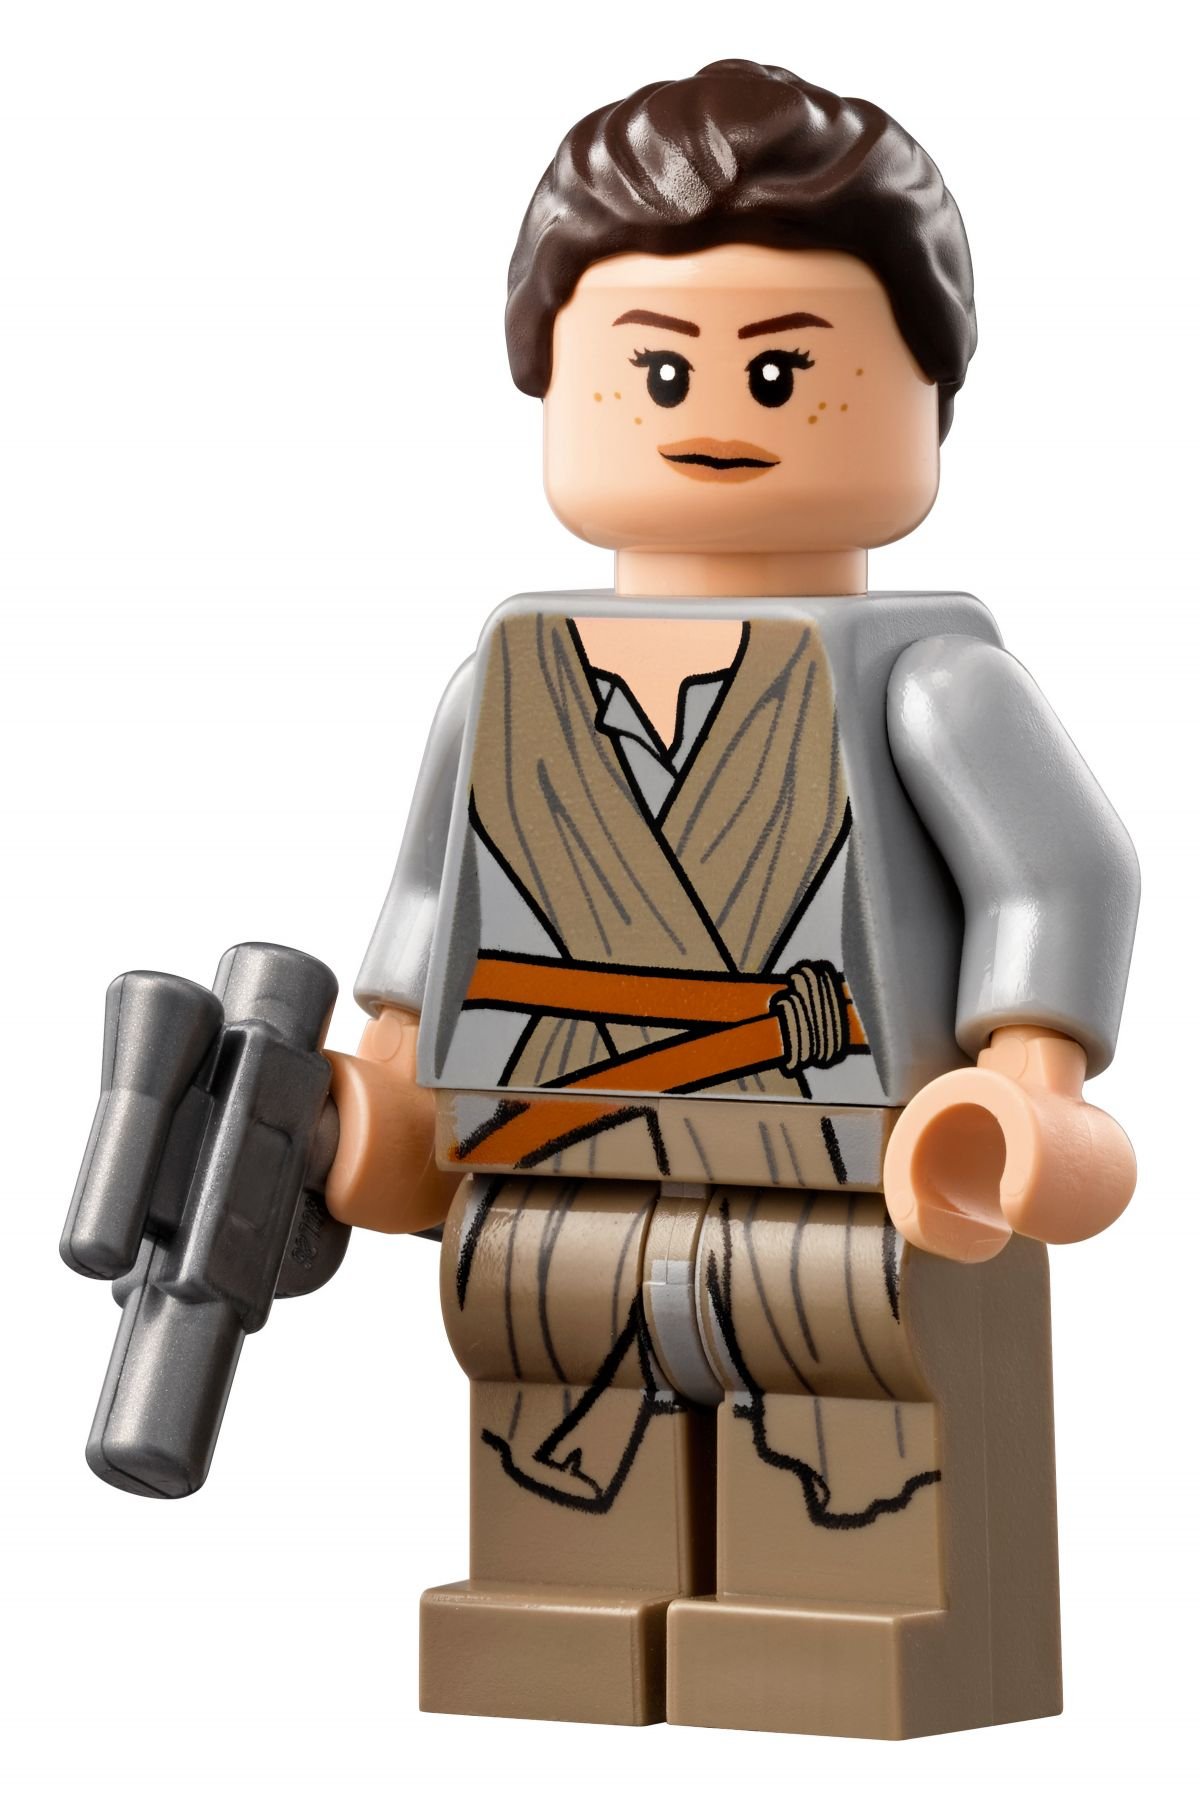 LEGO Star Wars 75192 Millennium Falcon™ LEGO_75192_alt20.jpg